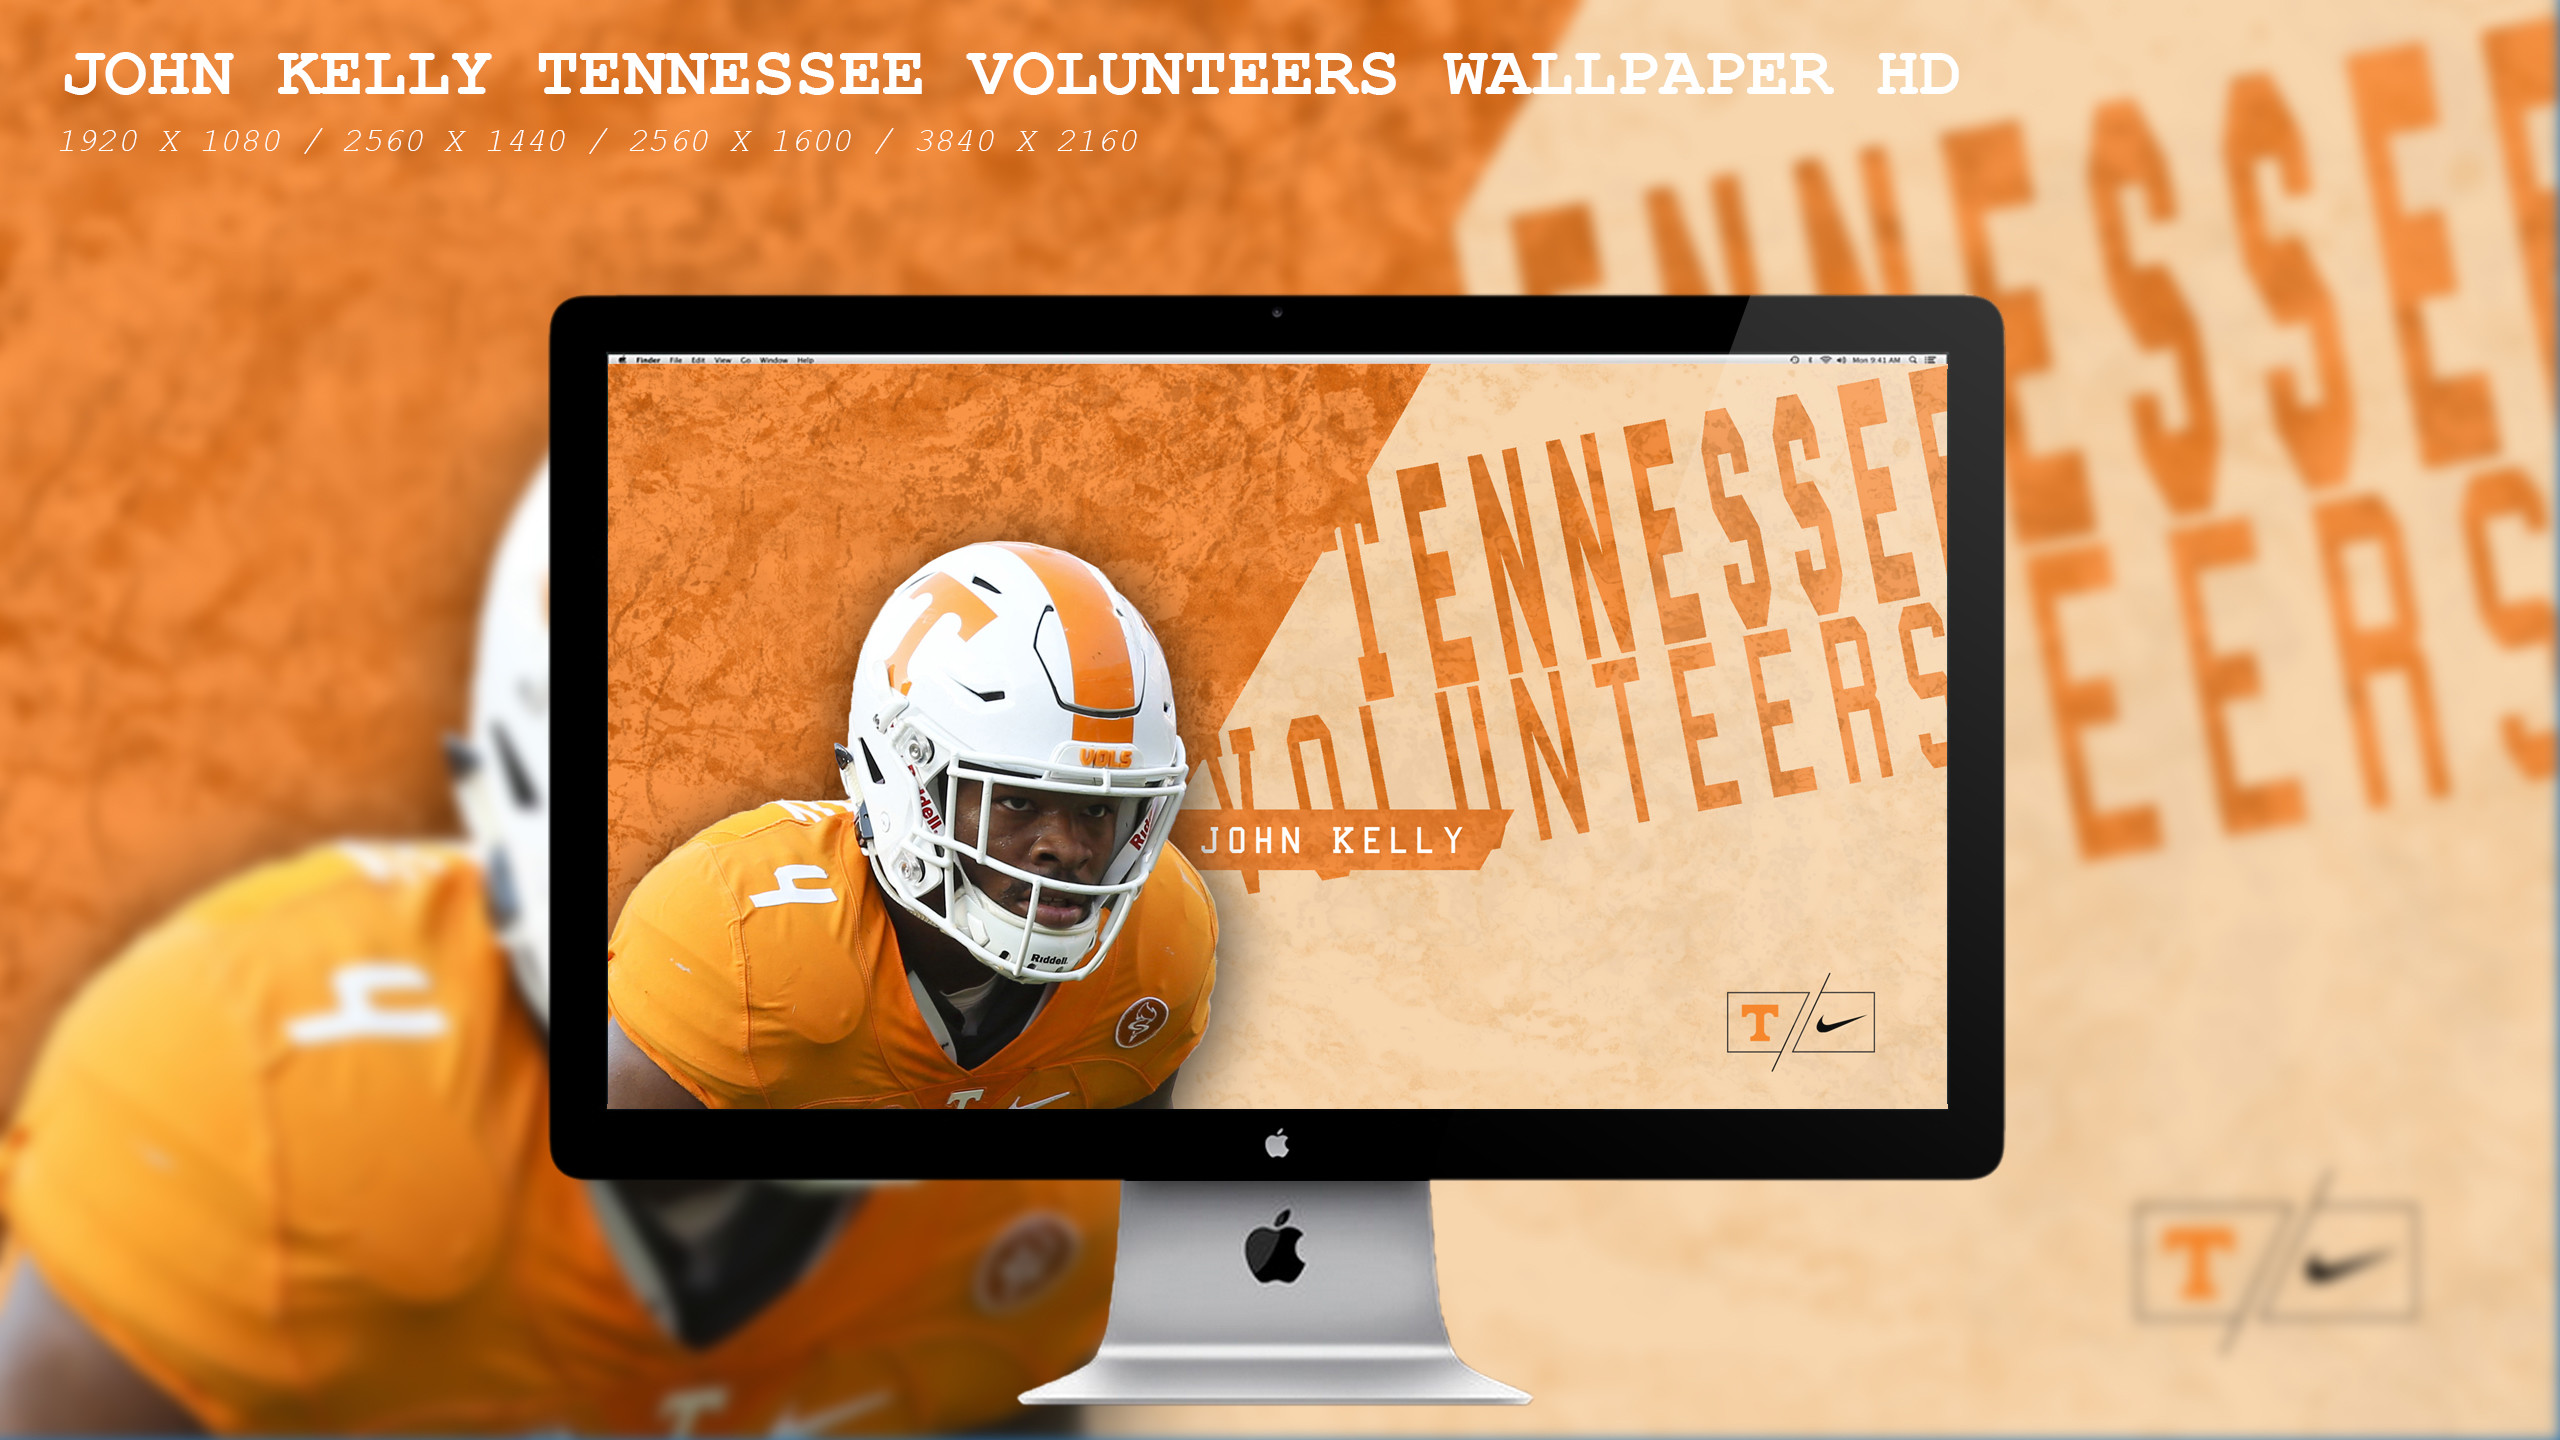 2560x1440 ... John Kelly Tennessee Volunteers Wallpaper HD by BeAware8